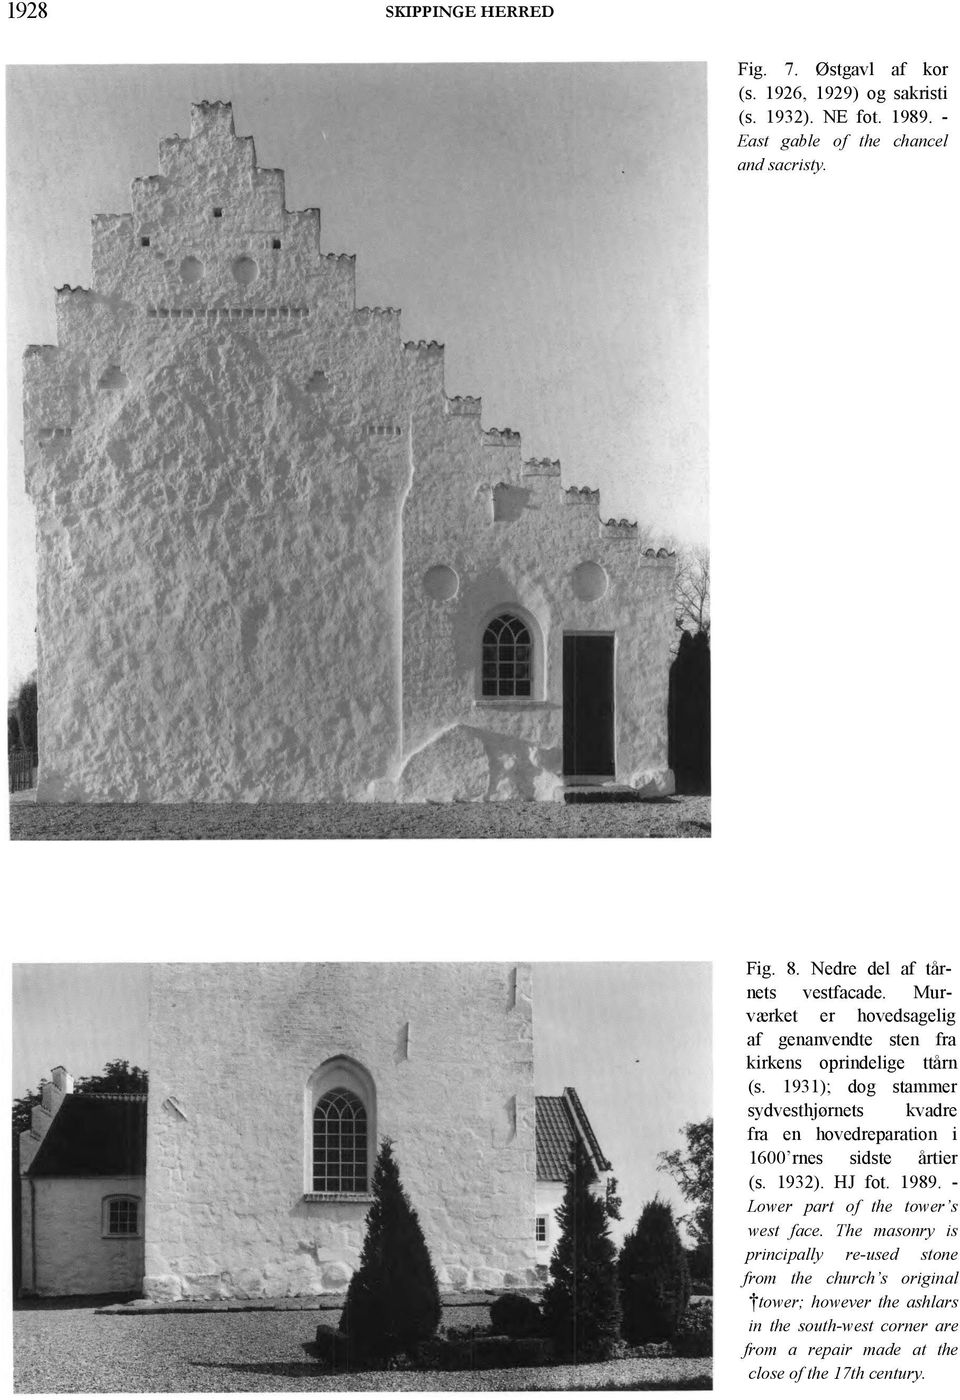 1931); dog stammer sydvesthjørnets kvadre fra en hovedreparation i 1600 rnes sidste årtier (s. 1932). HJ fot. 1989.